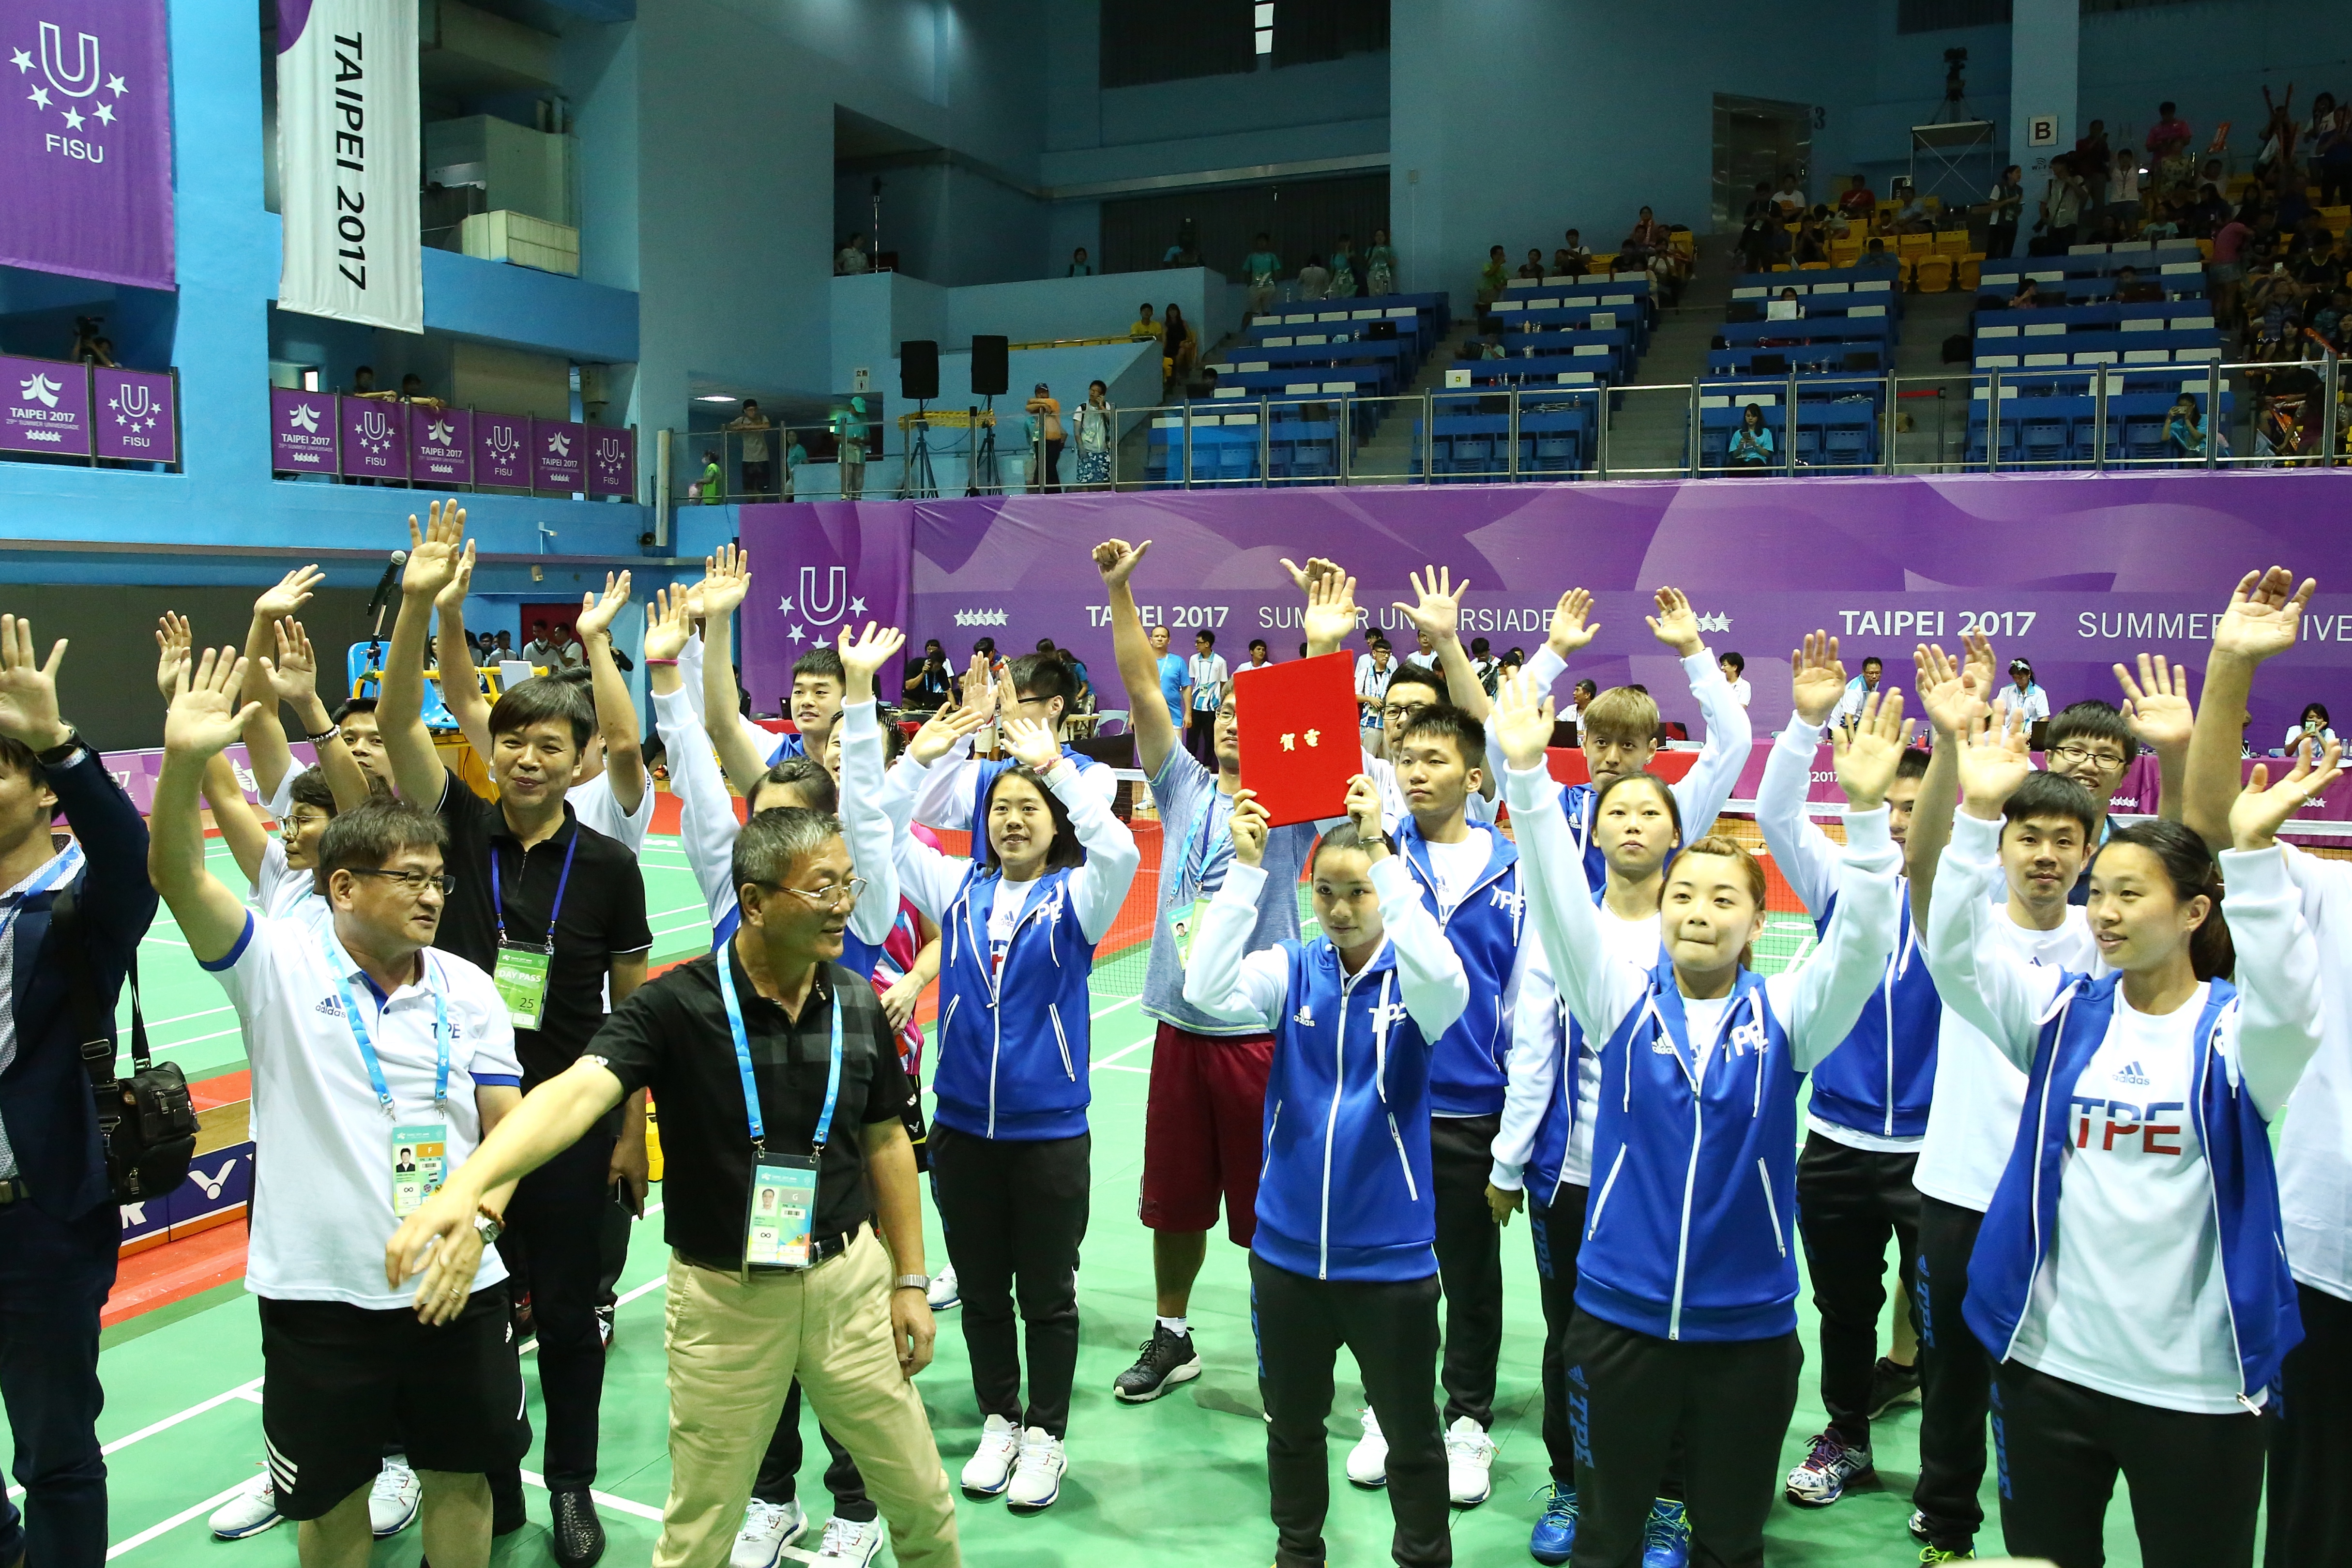 台灣羽球隊向觀眾揮手致意。